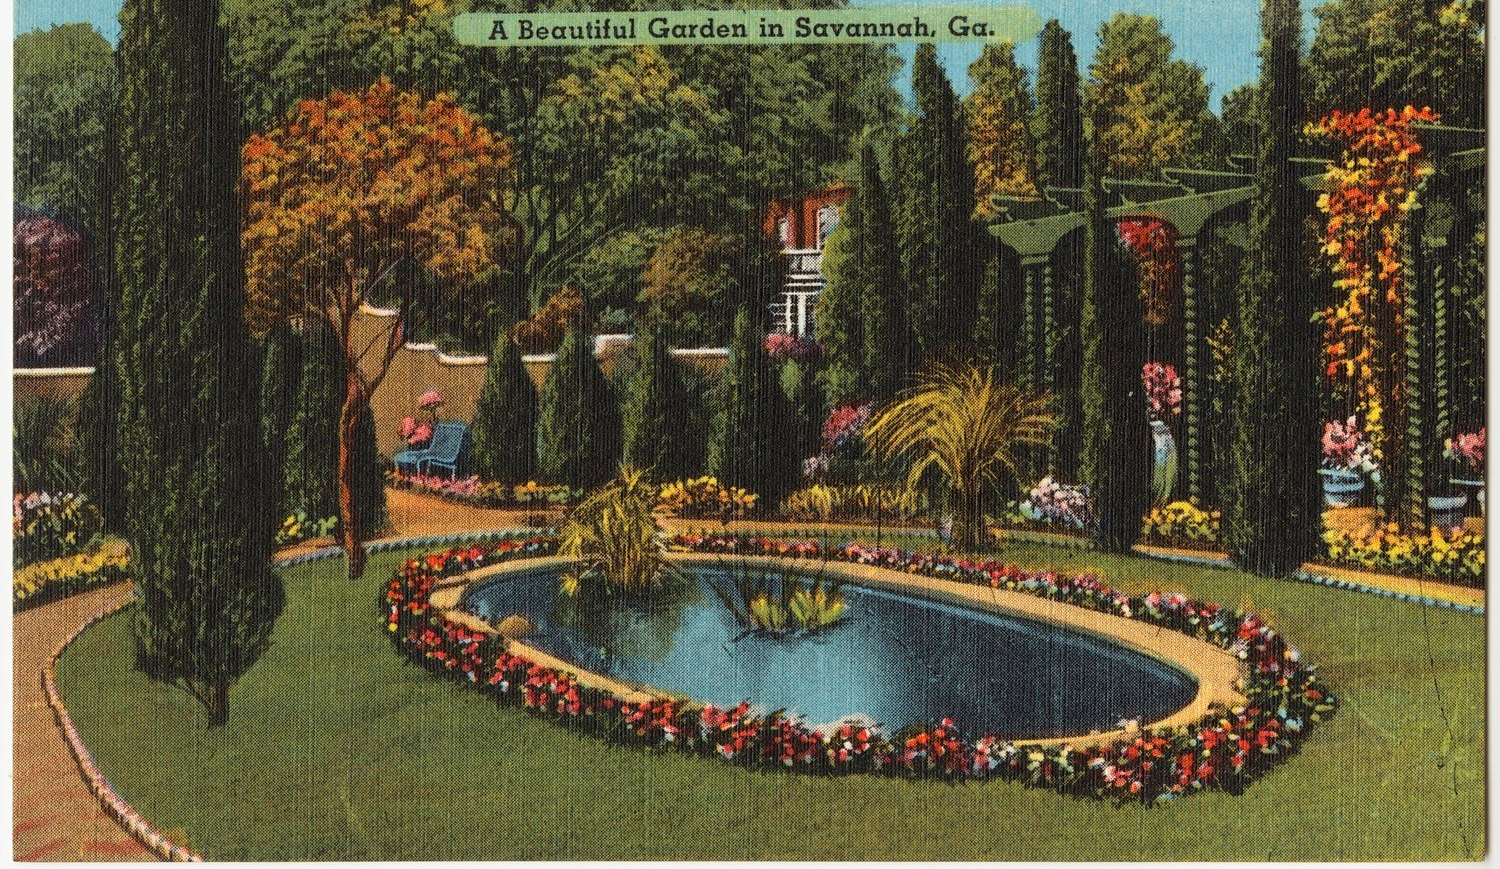 Vintage postcard of Savannah, GA